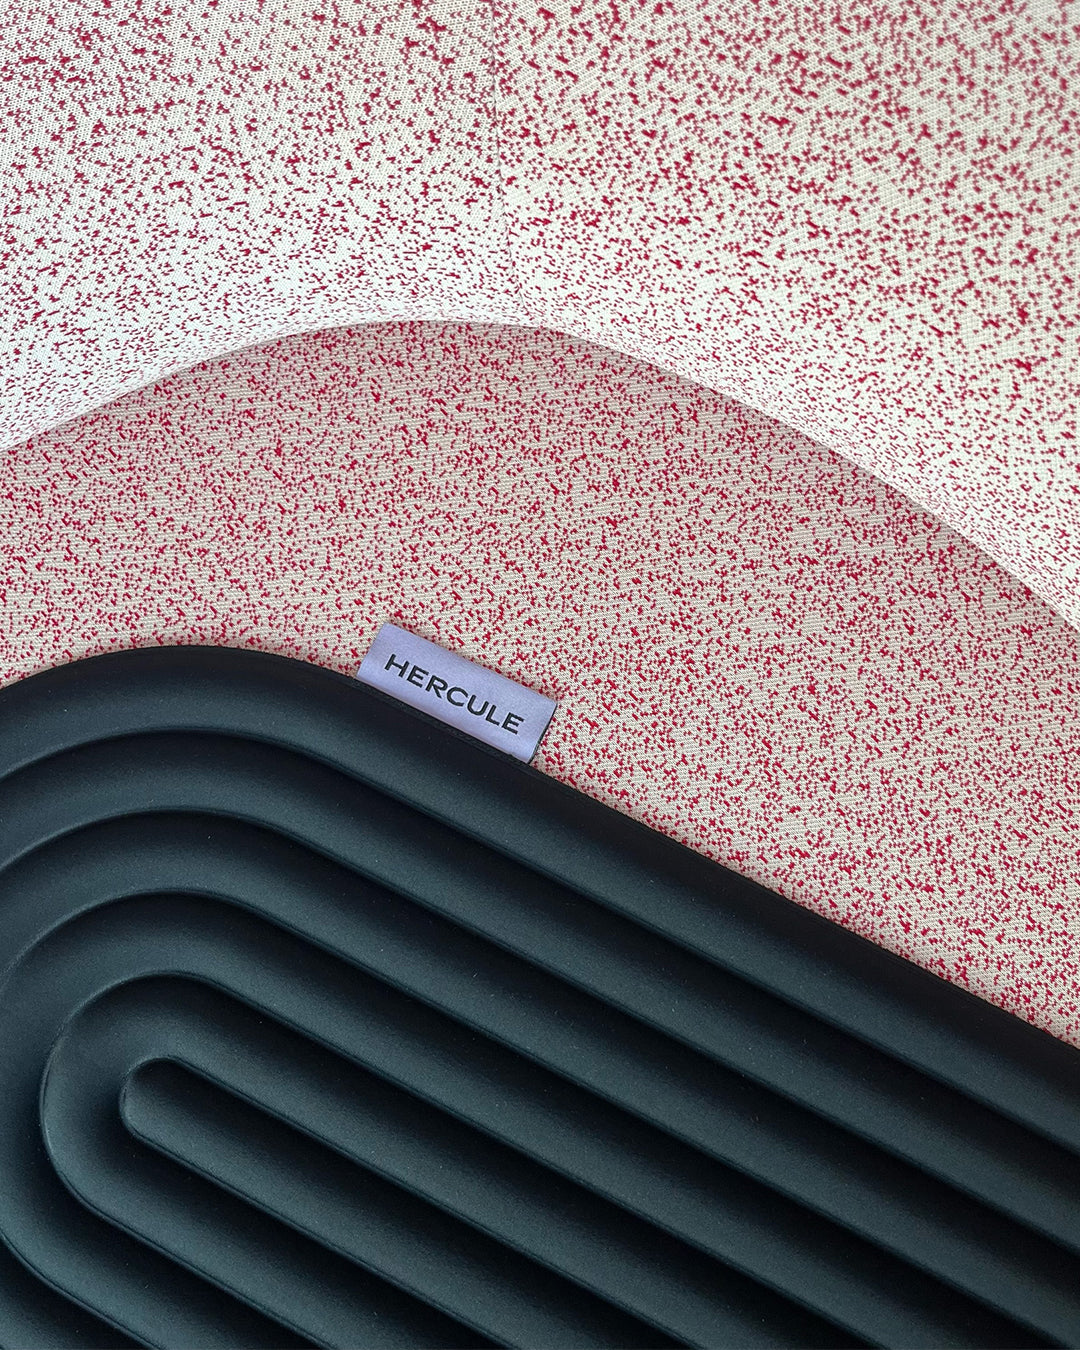 Mini tapis de sol pad de confort de la marque hercule studio modèle galé couleur outrenoir déplié sur un fauteuil